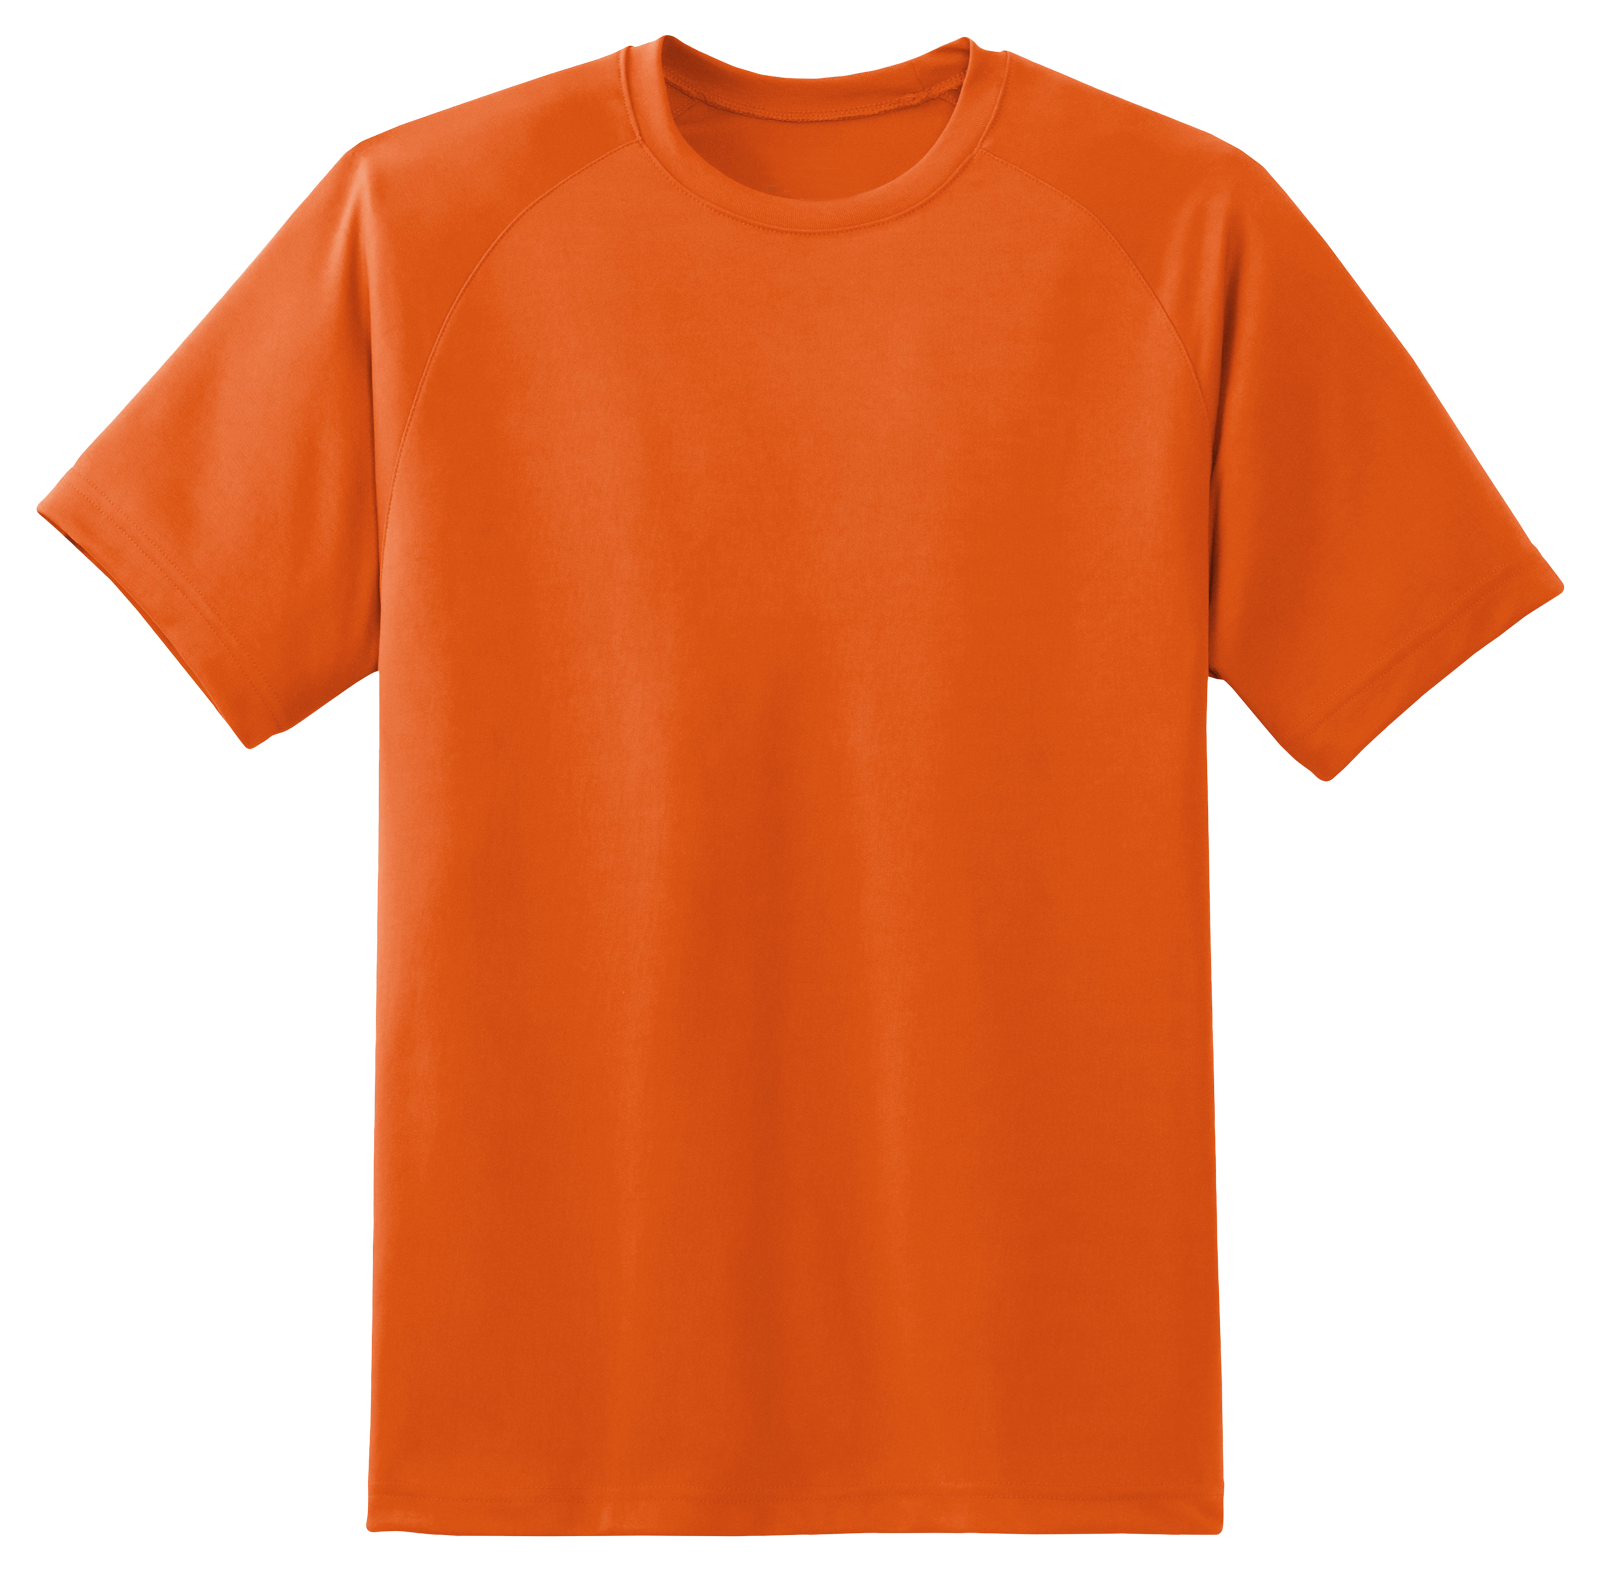 T Shirt Orange PNG Image - PurePNG | Free transparent CC0 ...